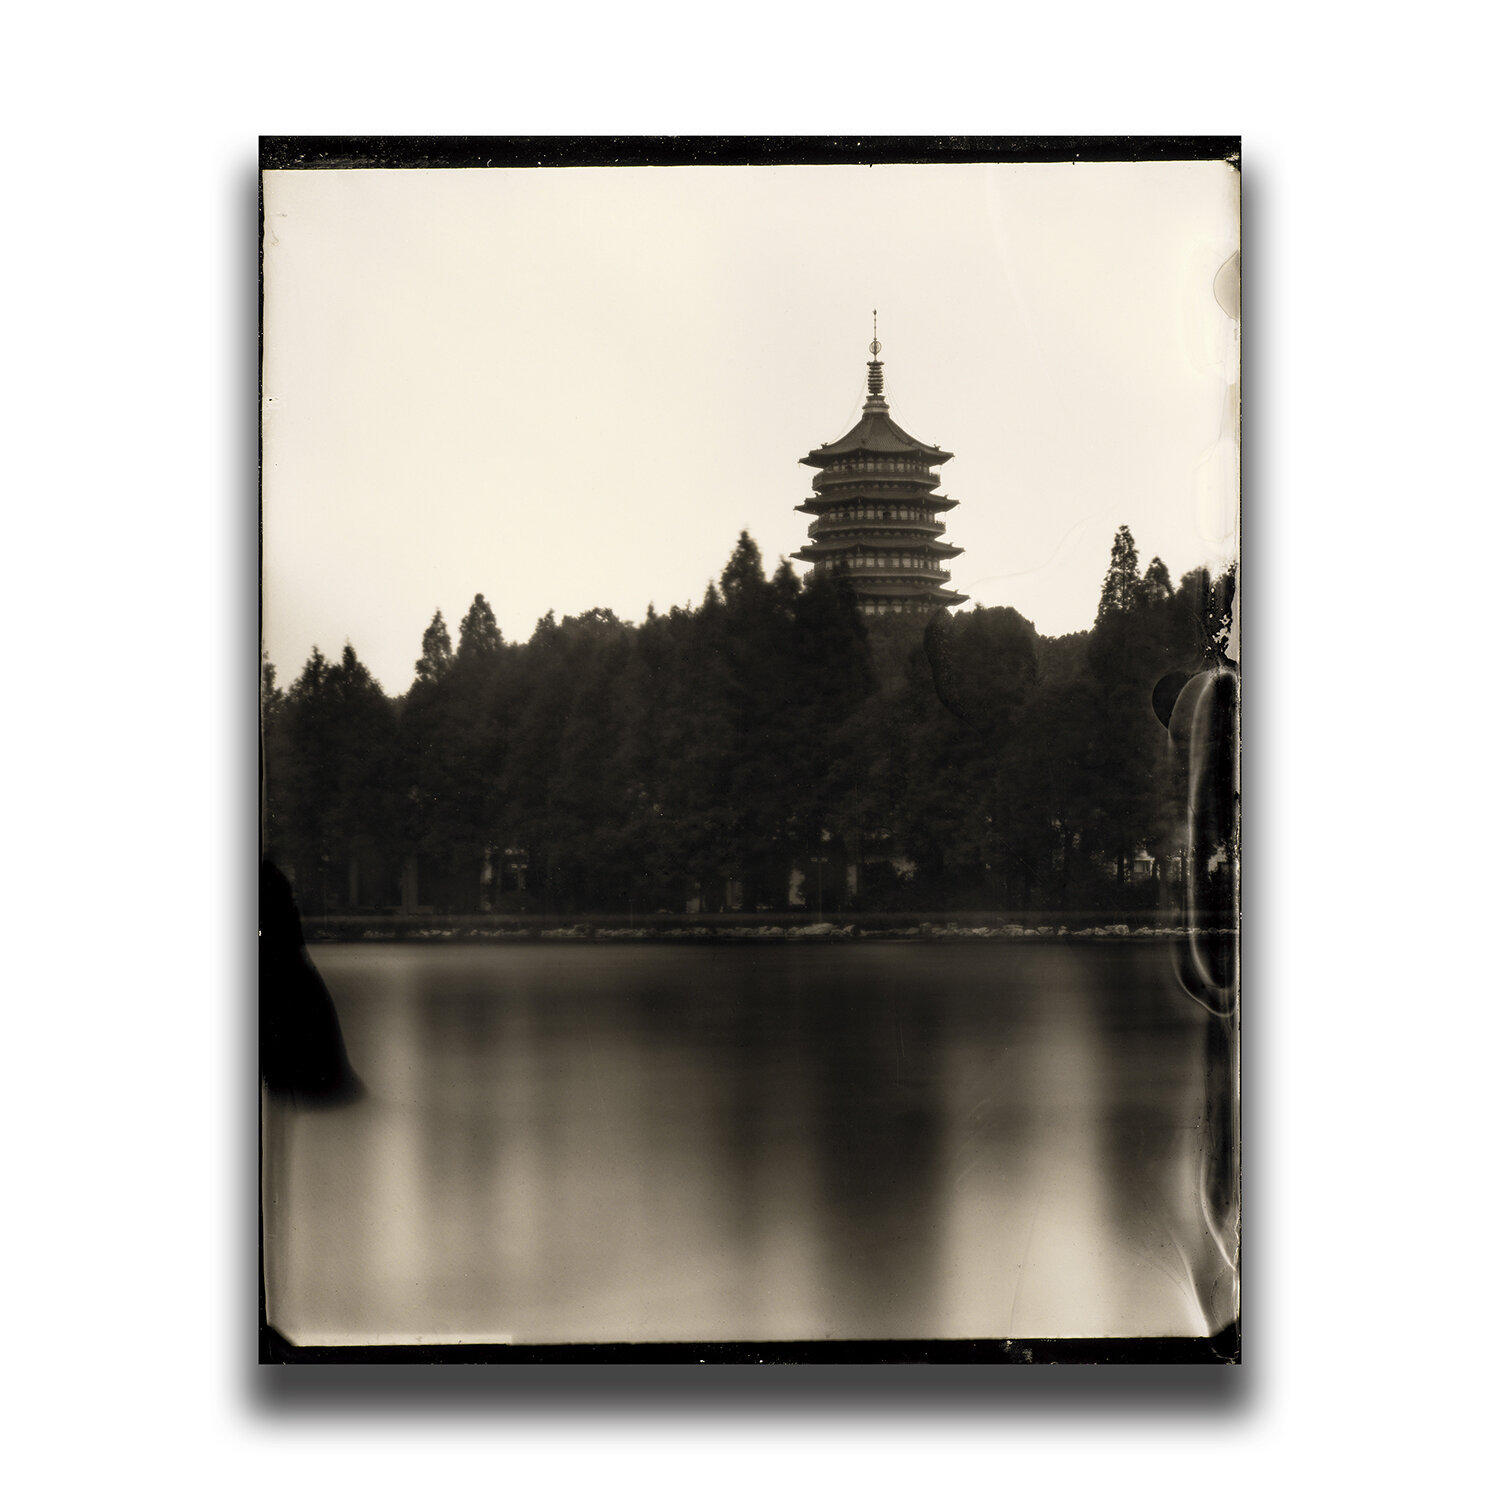 Hangzhou・Leifeng Pagoda/杭州・雷峰塔/항저우・뇌봉탑/杭州・雷峰塔